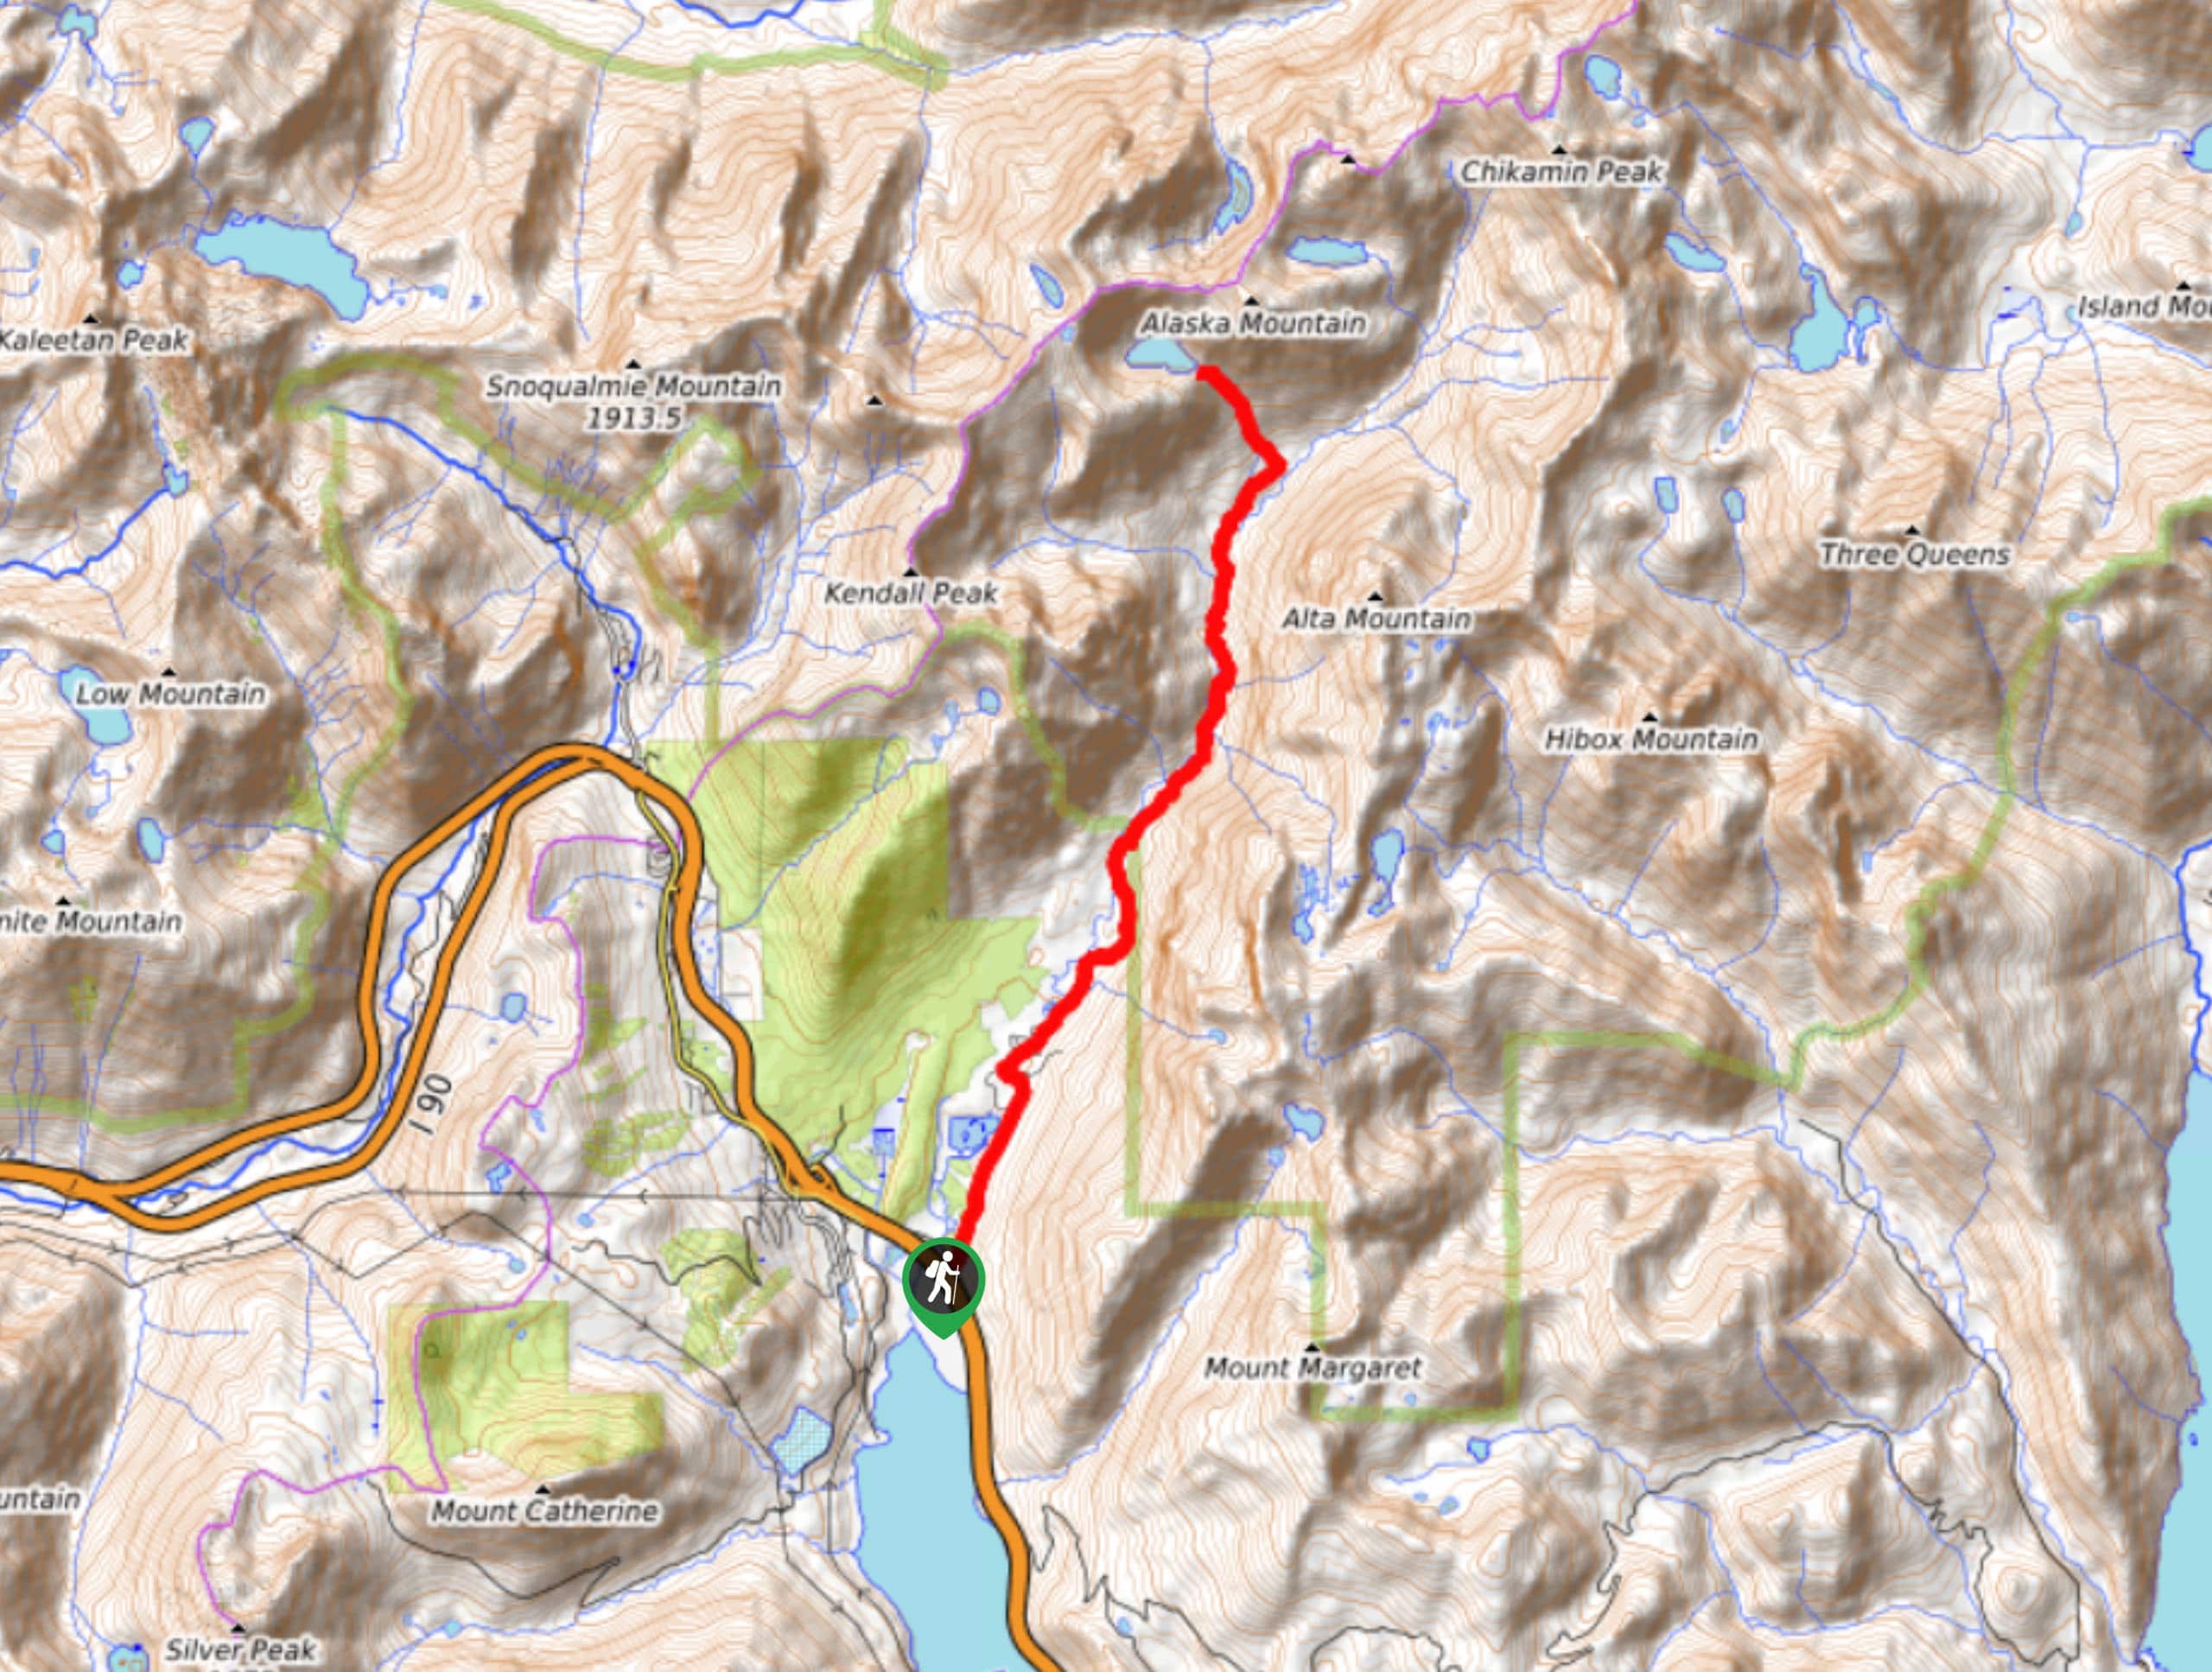 Alaska Lake via Gold Creek Trail Map